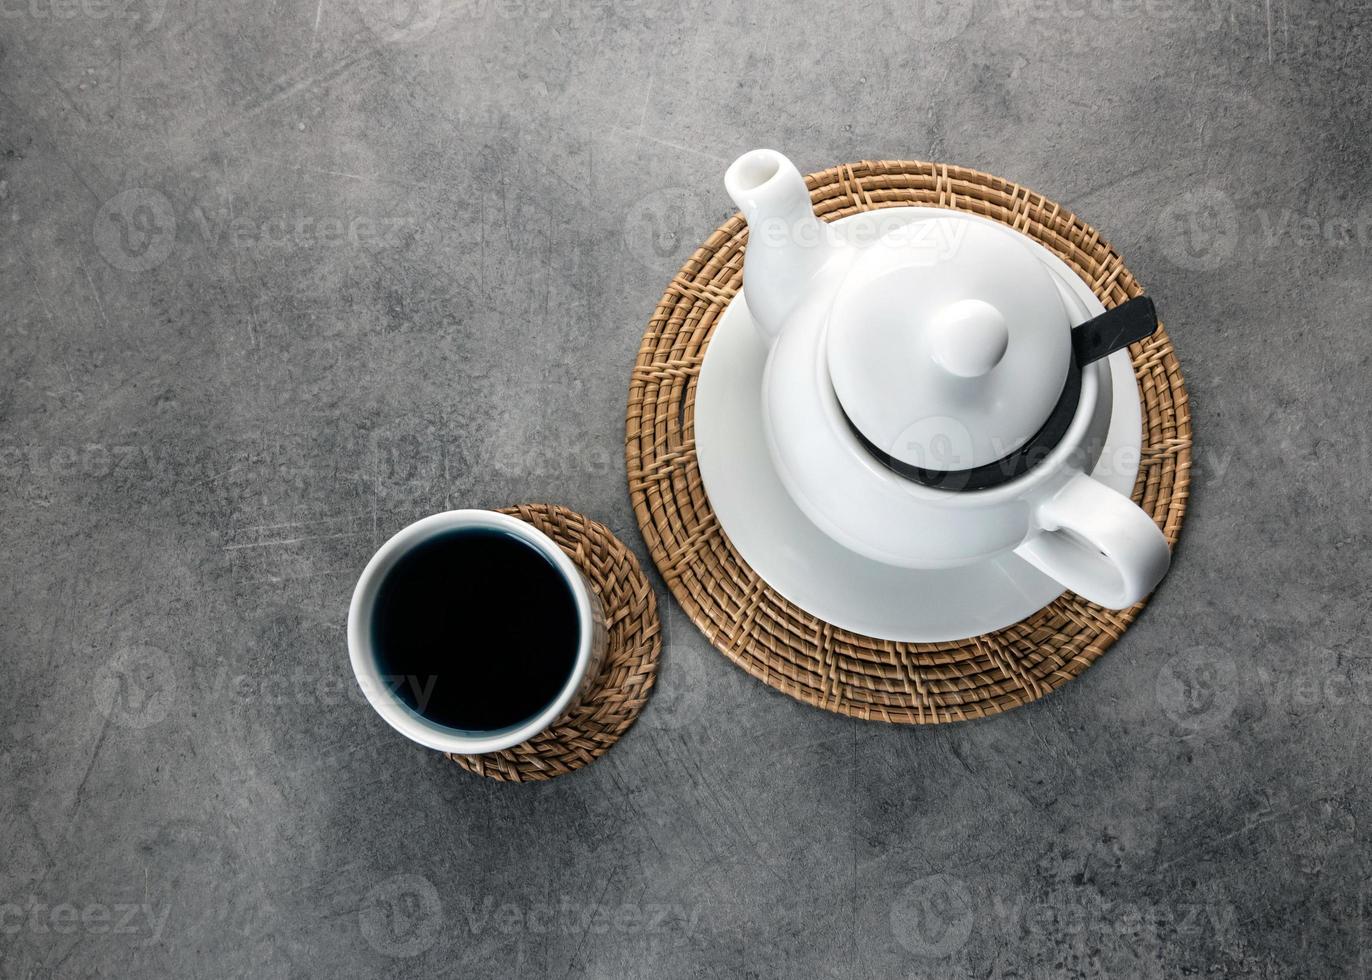 xícara de chá de porcelana branca e bule, configuração de mesa de chá da tarde foto